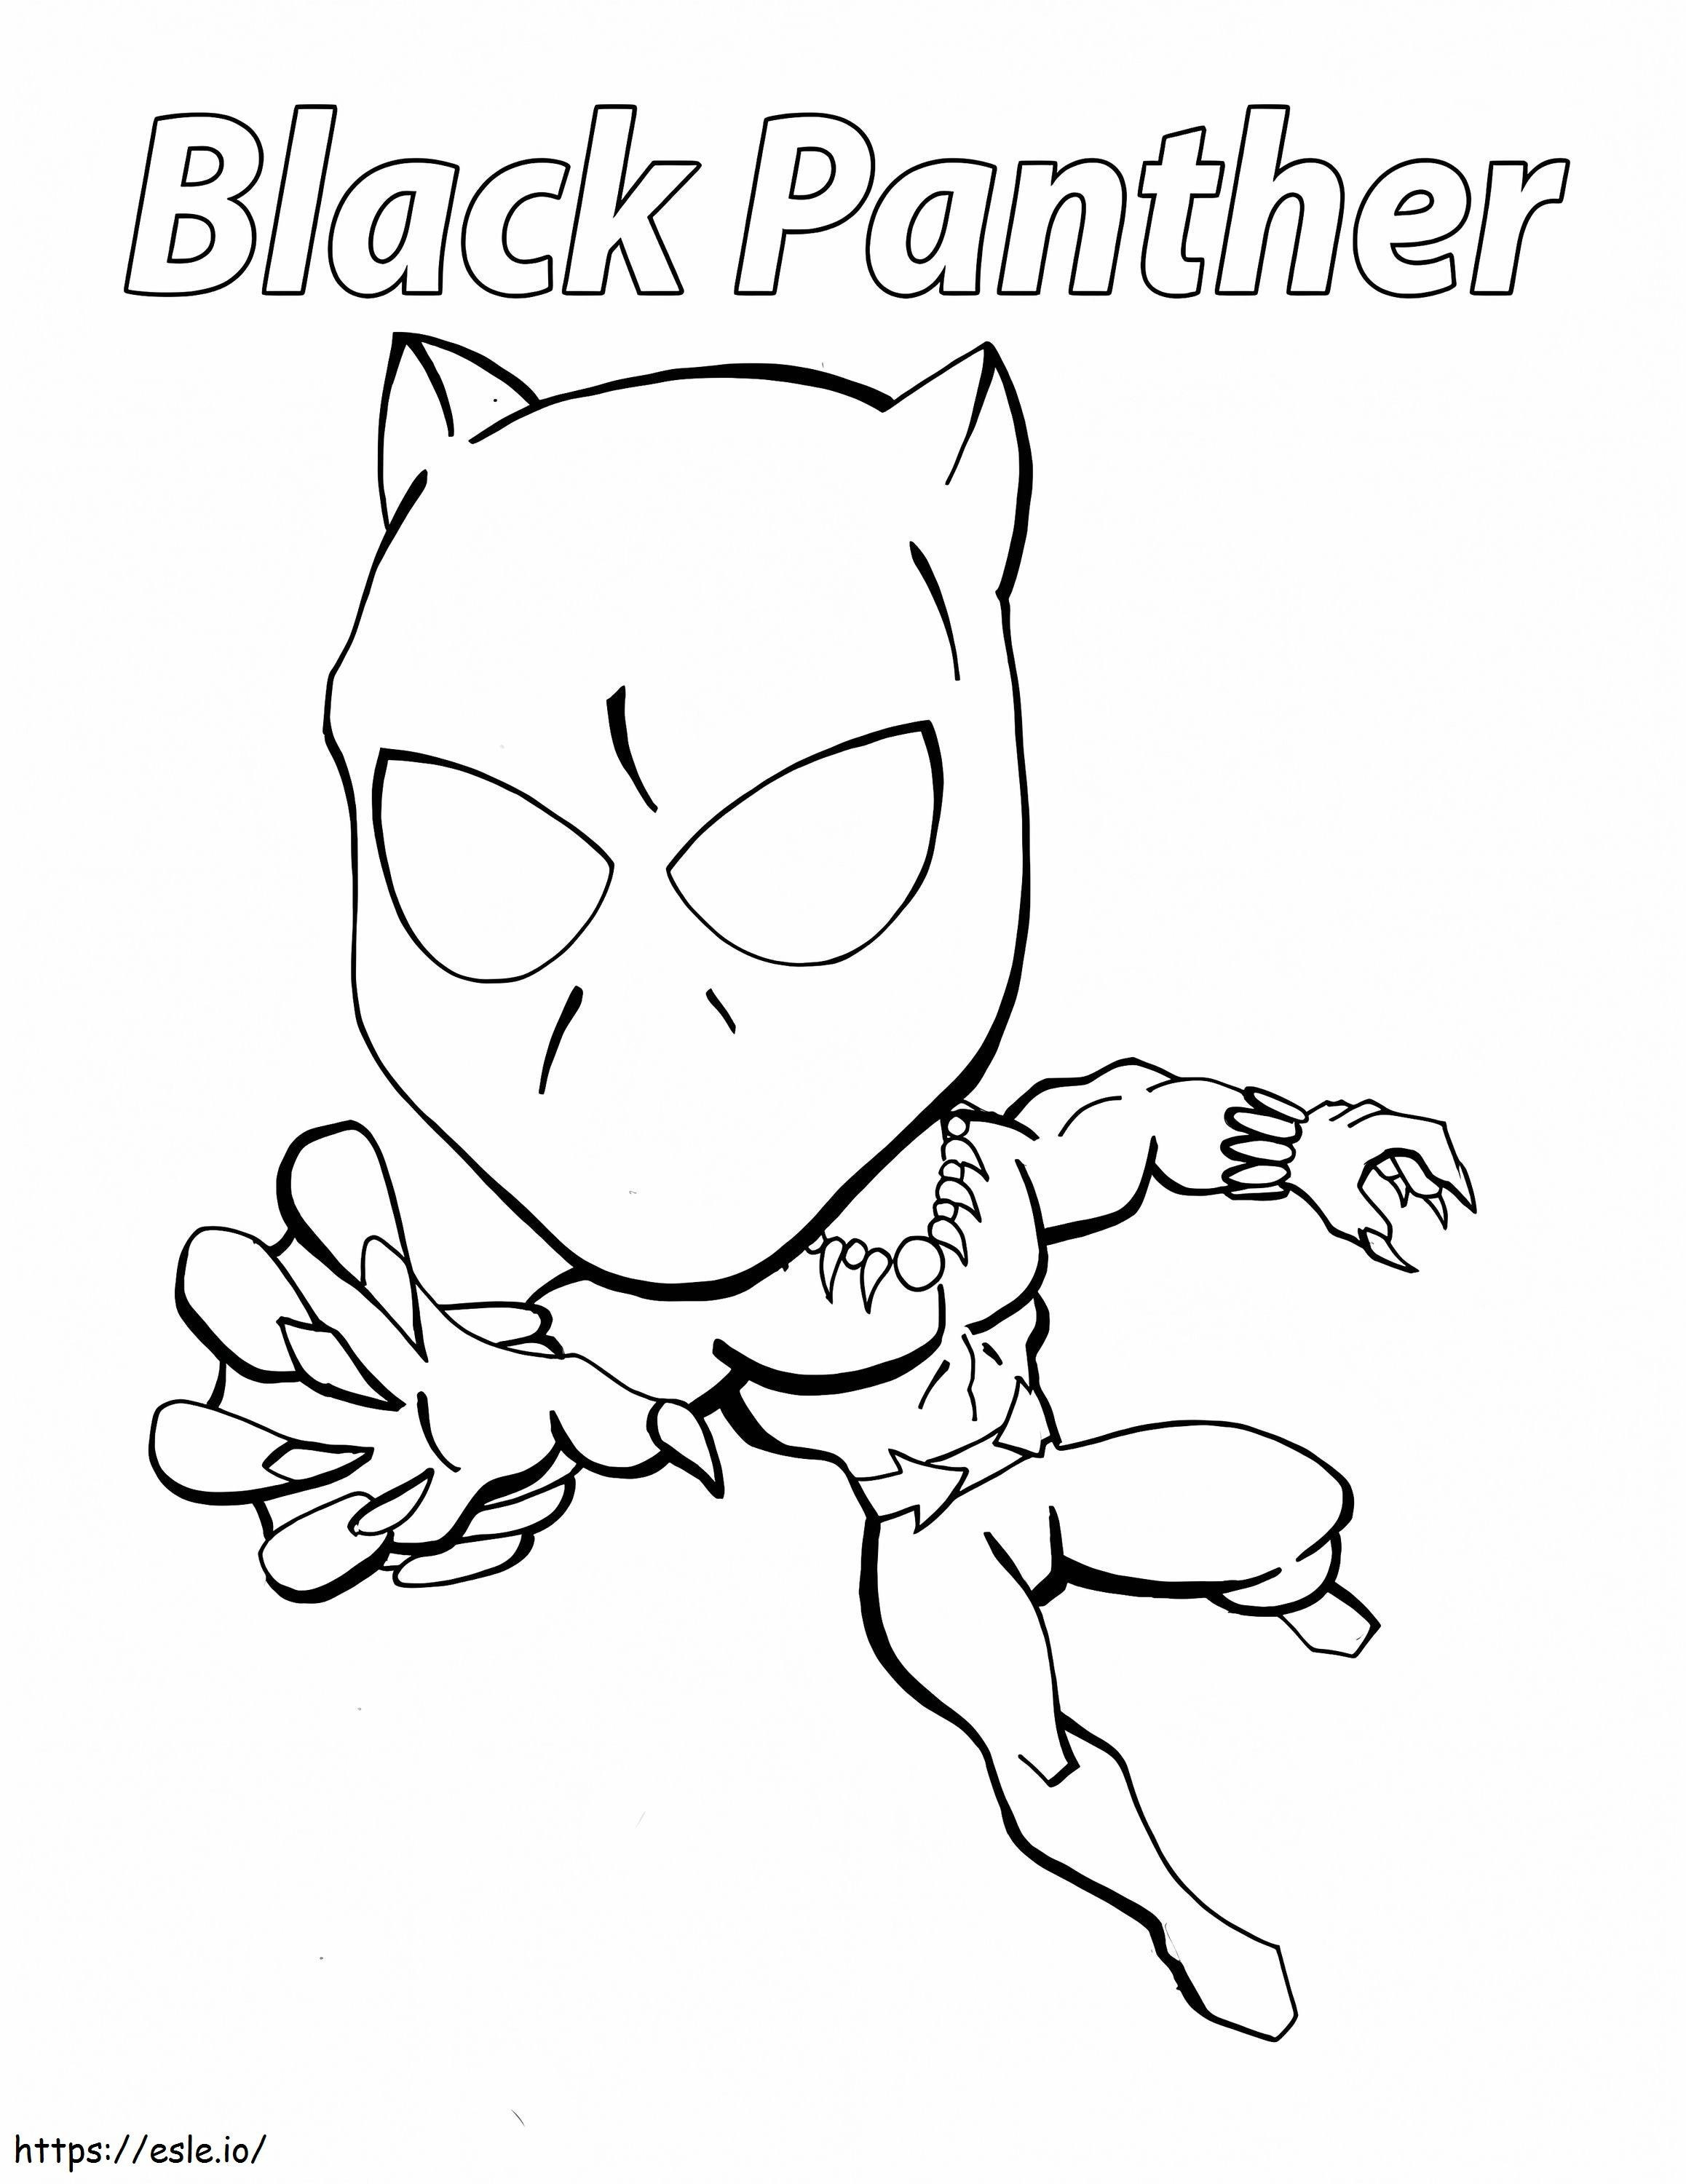 Chibi Black Panther coloring page